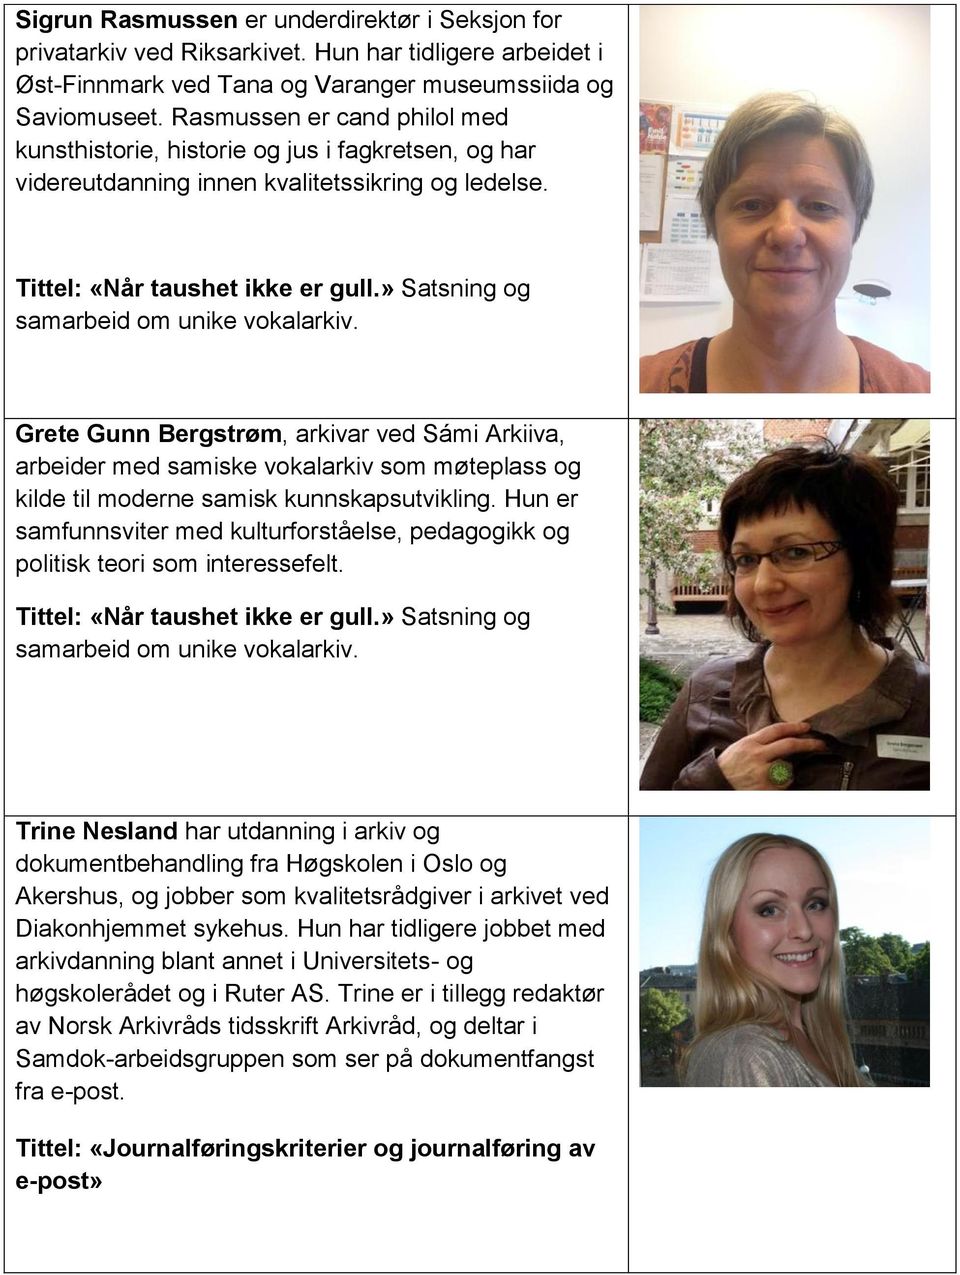 » Satsning og samarbeid om unike vokalarkiv. Grete Gunn Bergstrøm, arkivar ved Sámi Arkiiva, arbeider med samiske vokalarkiv som møteplass og kilde til moderne samisk kunnskapsutvikling.